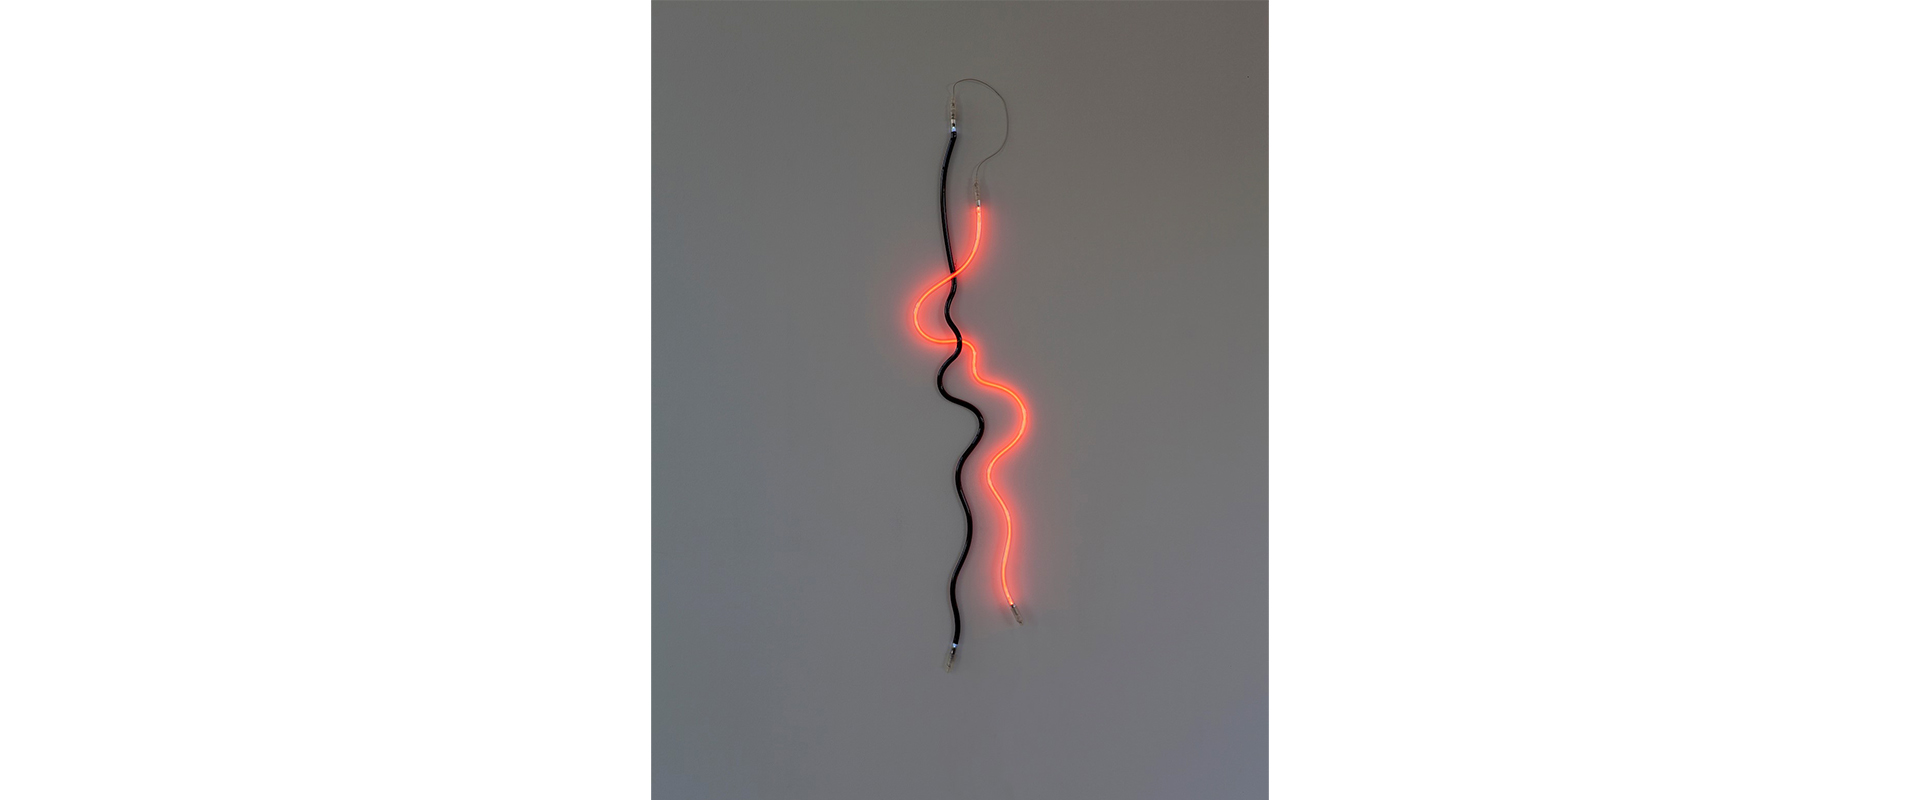 Hanging Brainwave - 2012, schwarzes und transparentes Glas, Argon, Neon, Transformator, 160 x 30 cm